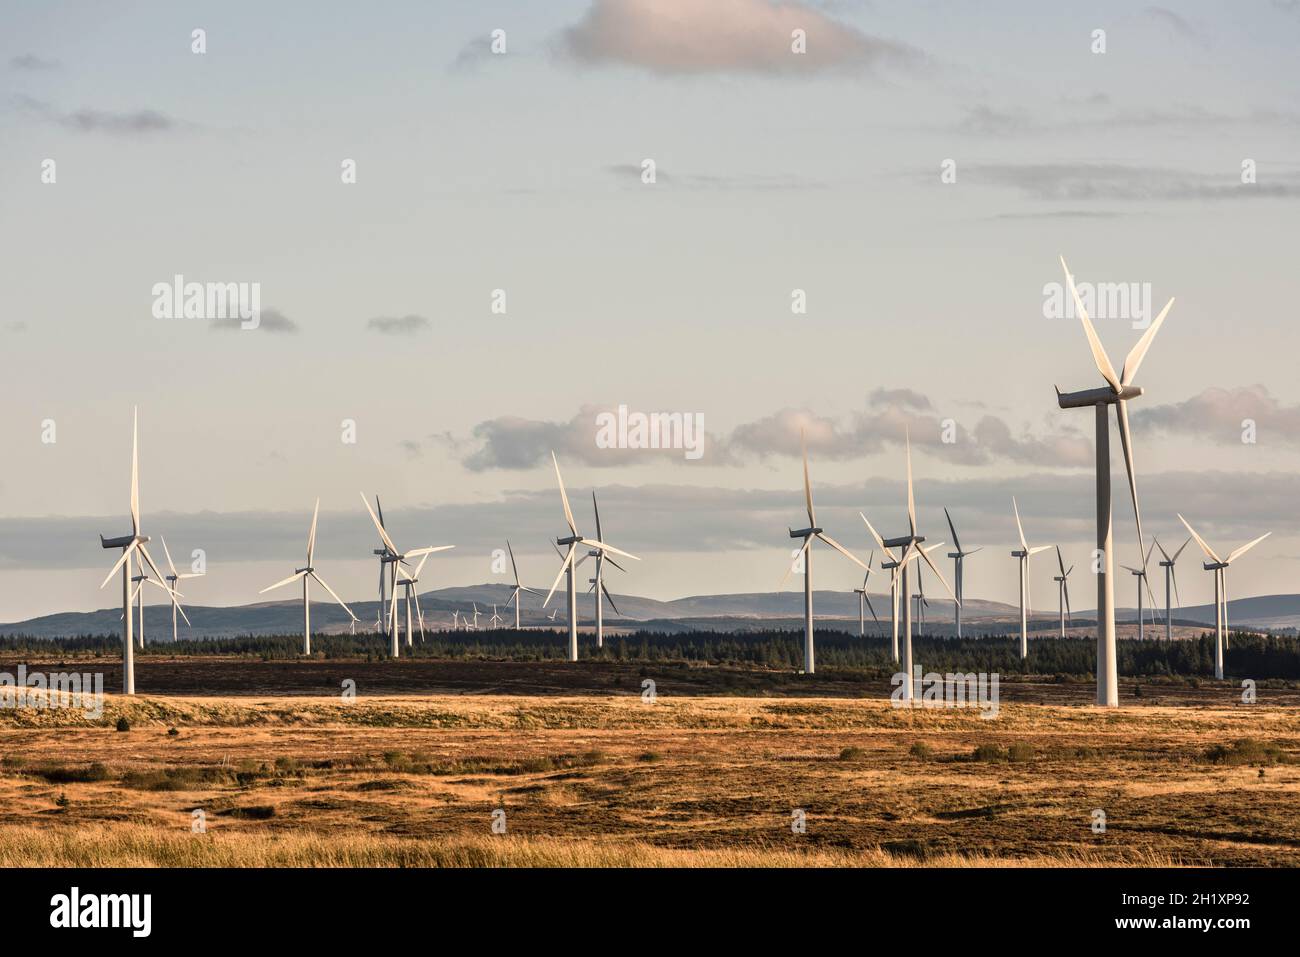 Einige der 215 Windenergieanlagen im Whitelee Windpark auf Eaglesham Moor in der Nähe von Glasgow, Schottland, Großbritannien, dem größten Onshore-Windpark Großbritanniens Stockfoto